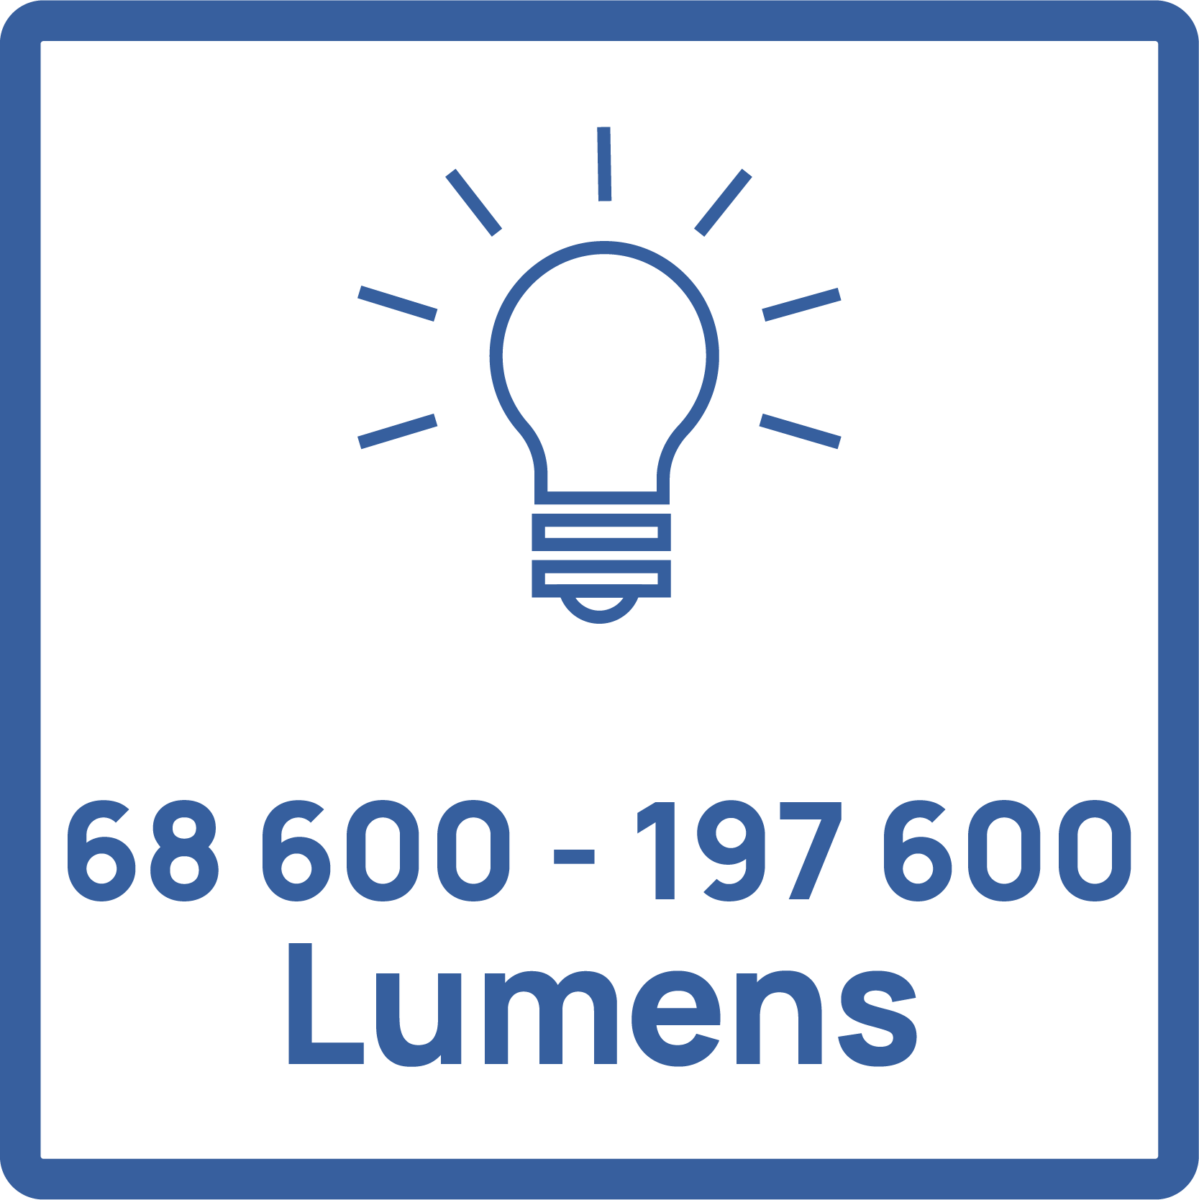 Puissance lumineuse : de 68 600 à 197 600 Lumens